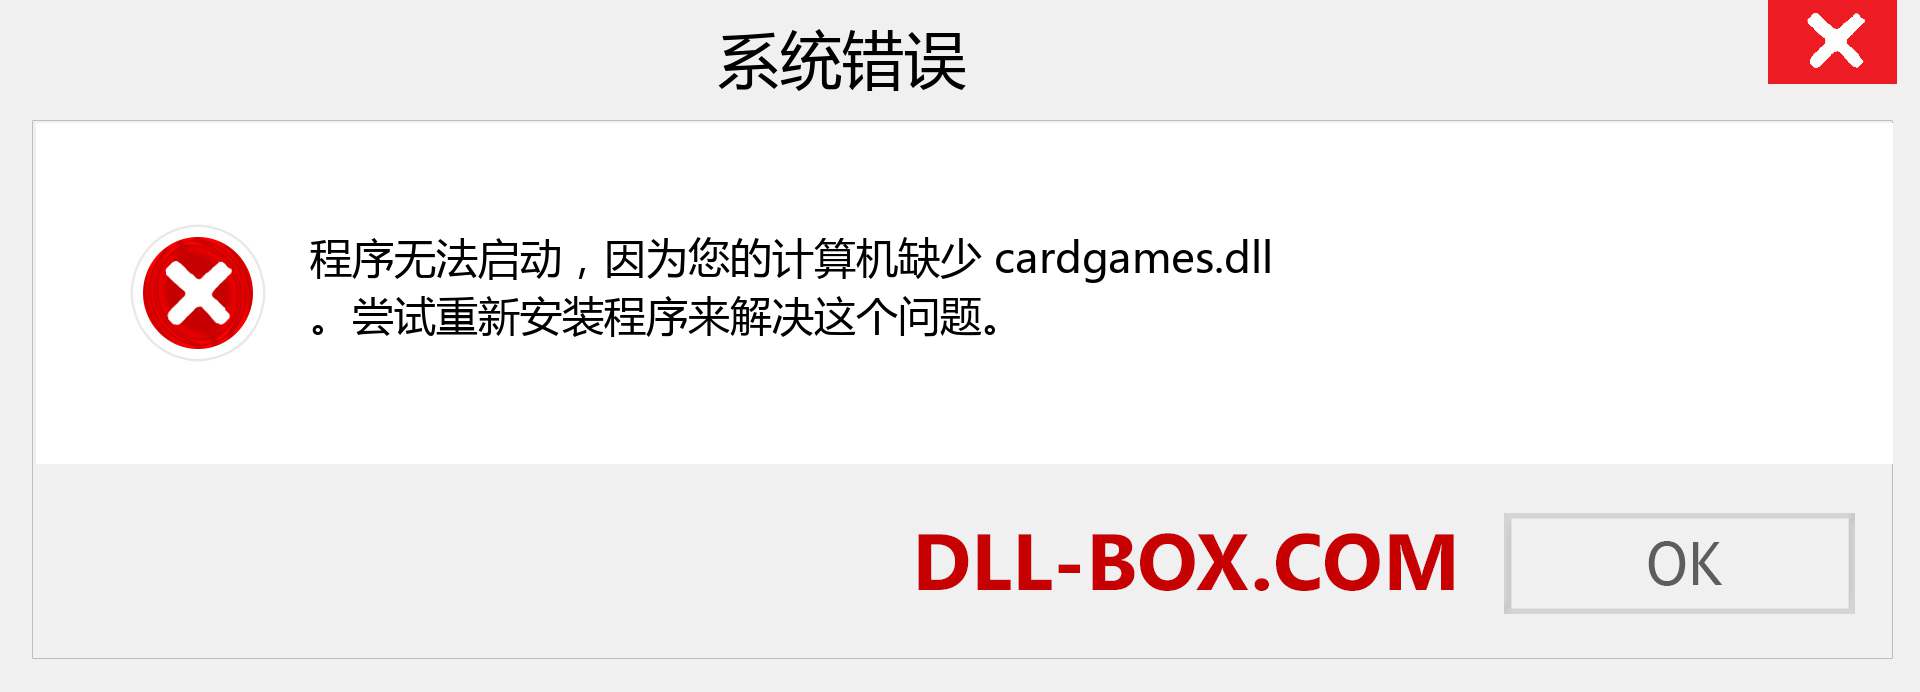 cardgames.dll 文件丢失？。 适用于 Windows 7、8、10 的下载 - 修复 Windows、照片、图像上的 cardgames dll 丢失错误